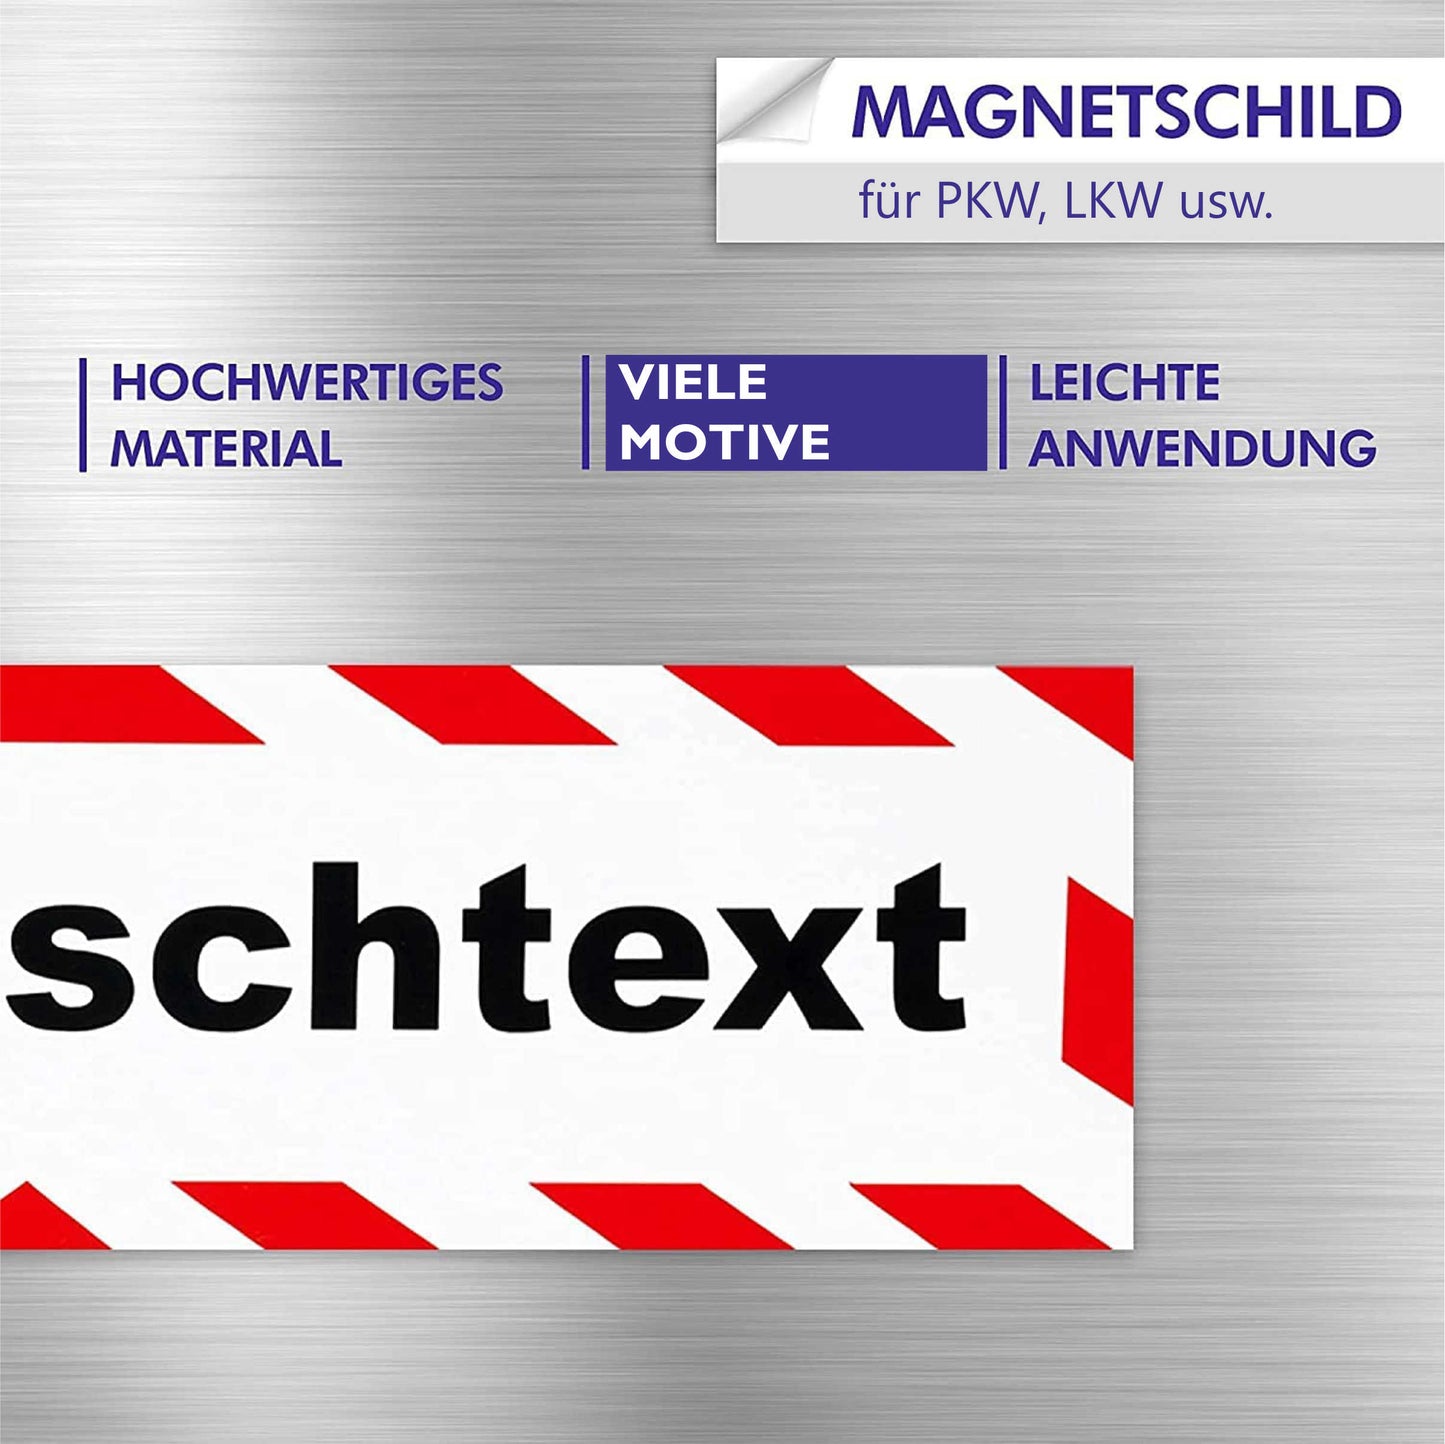 Magnetschild - Jagdaufsicht - Magnetfolie für Auto - LKW - Truck - Baustelle - Firma